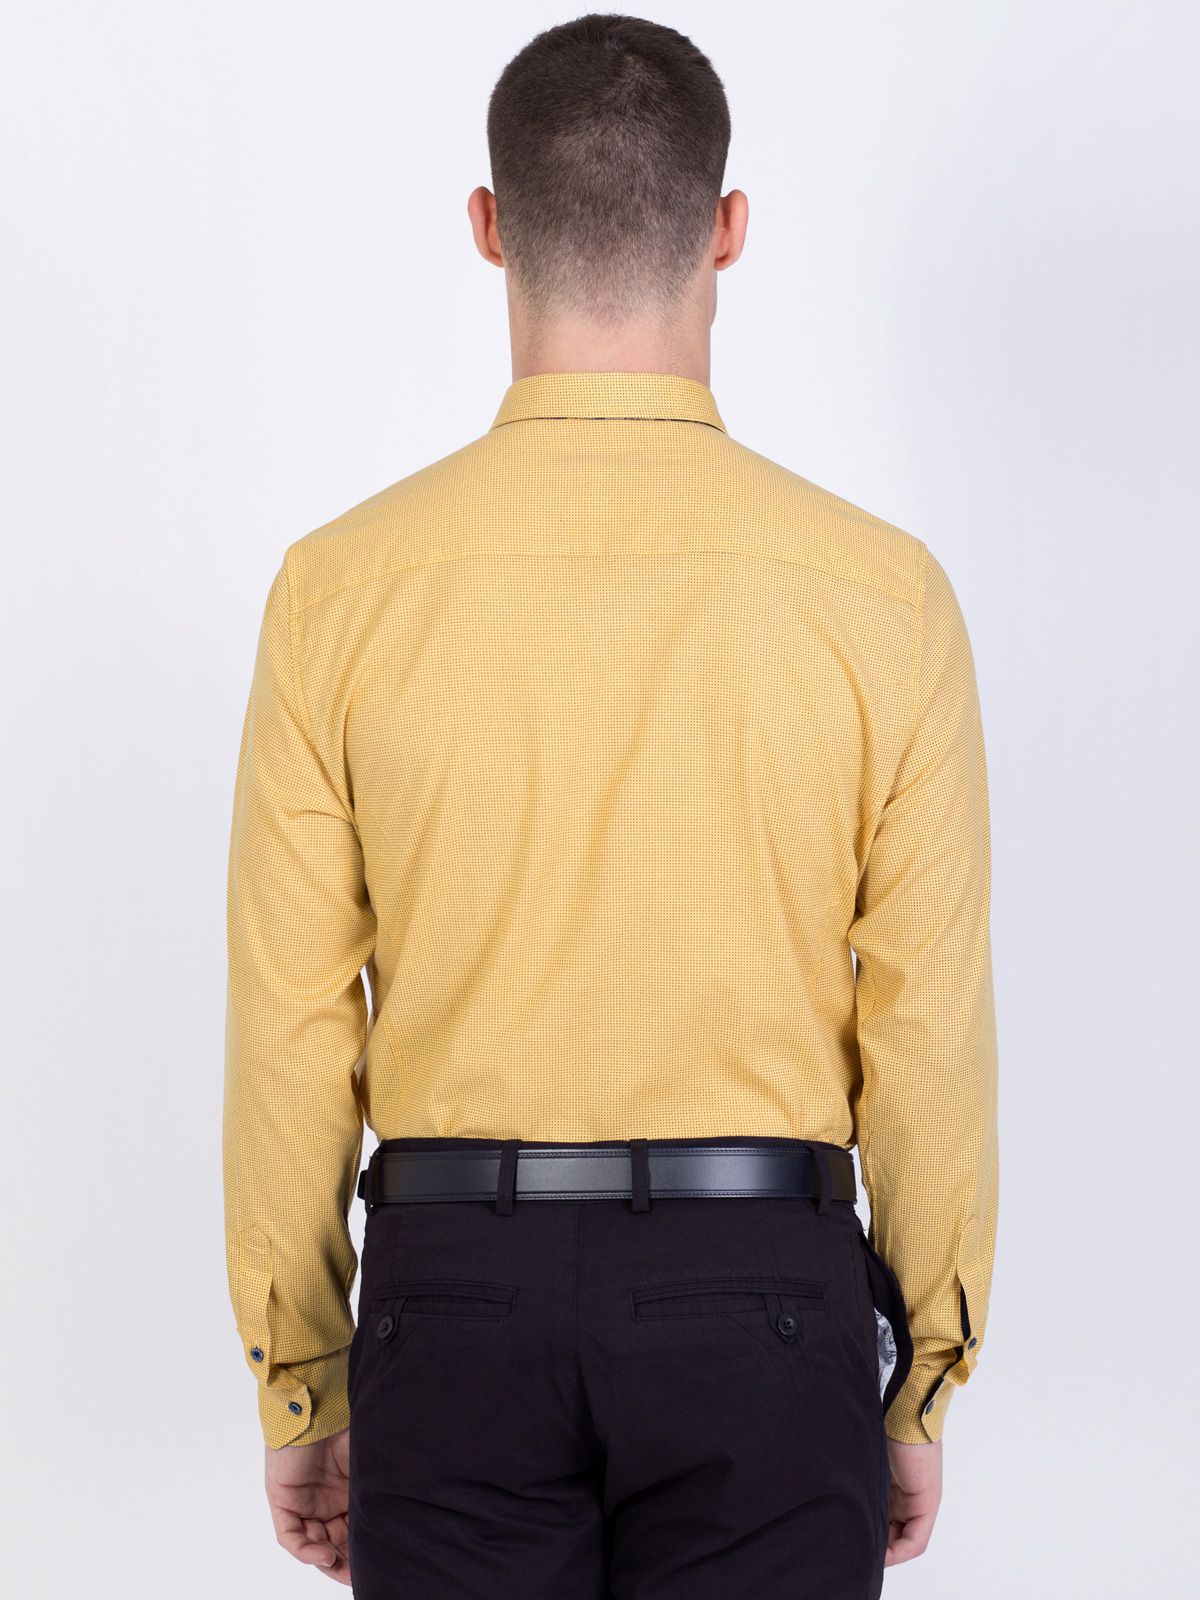 Σκούρο κίτρινο πουκάμισο με μικρές φιγο - 21454 € 21.93 img4